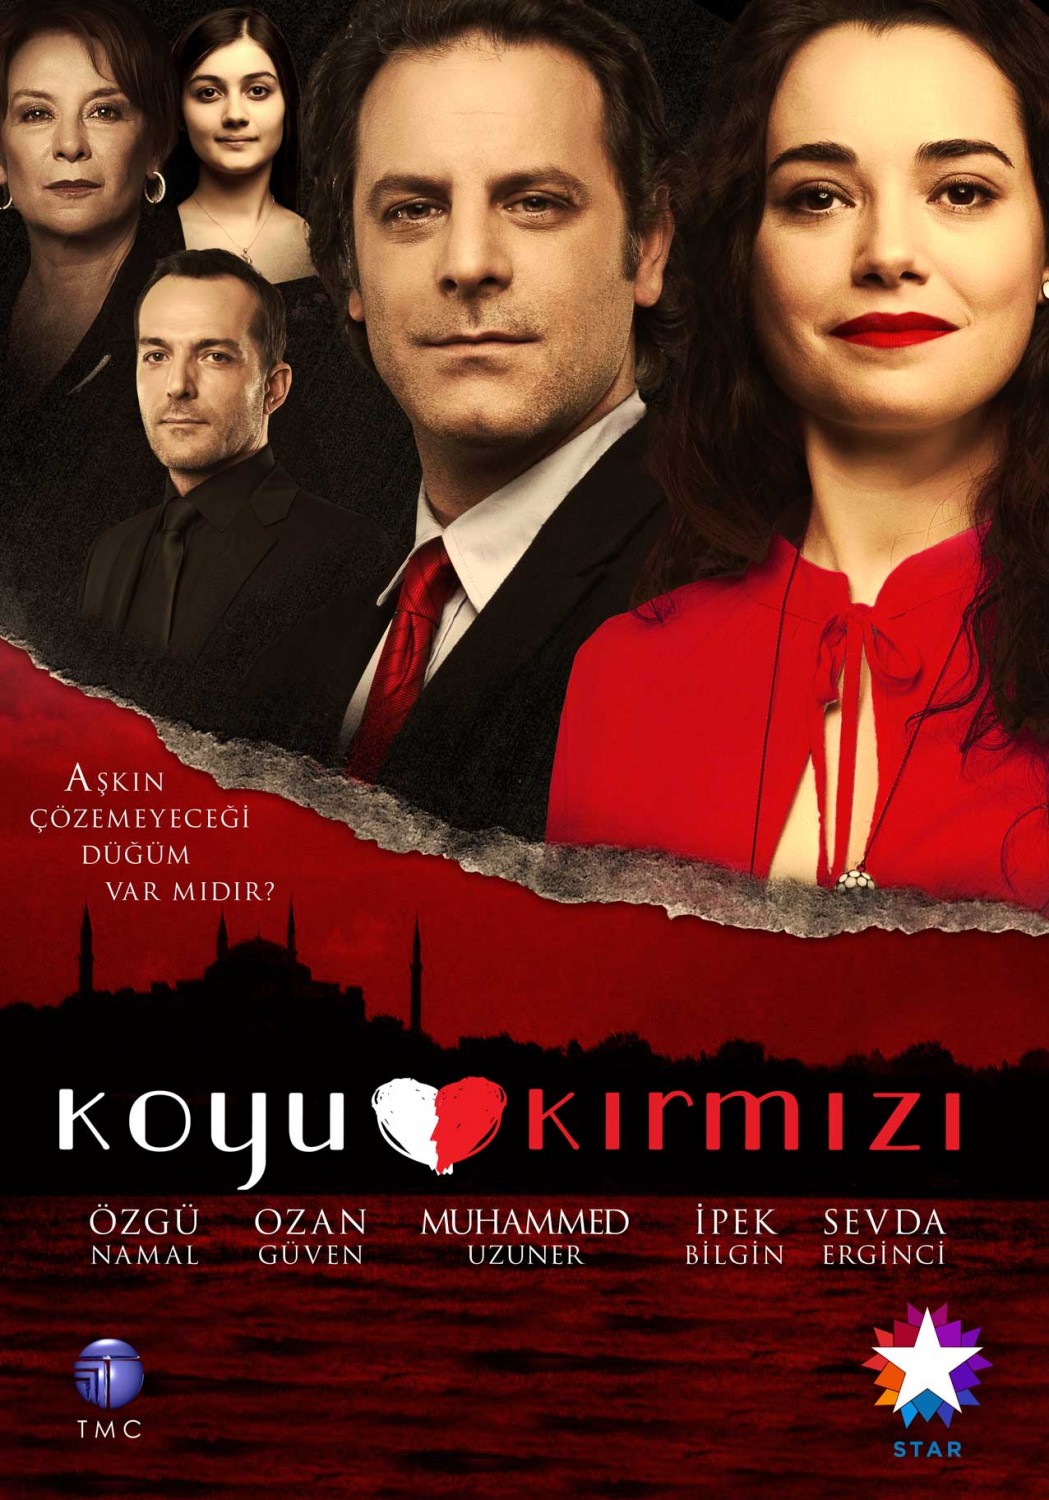 Extra Large TV Poster Image for Koyu Kirmizi 